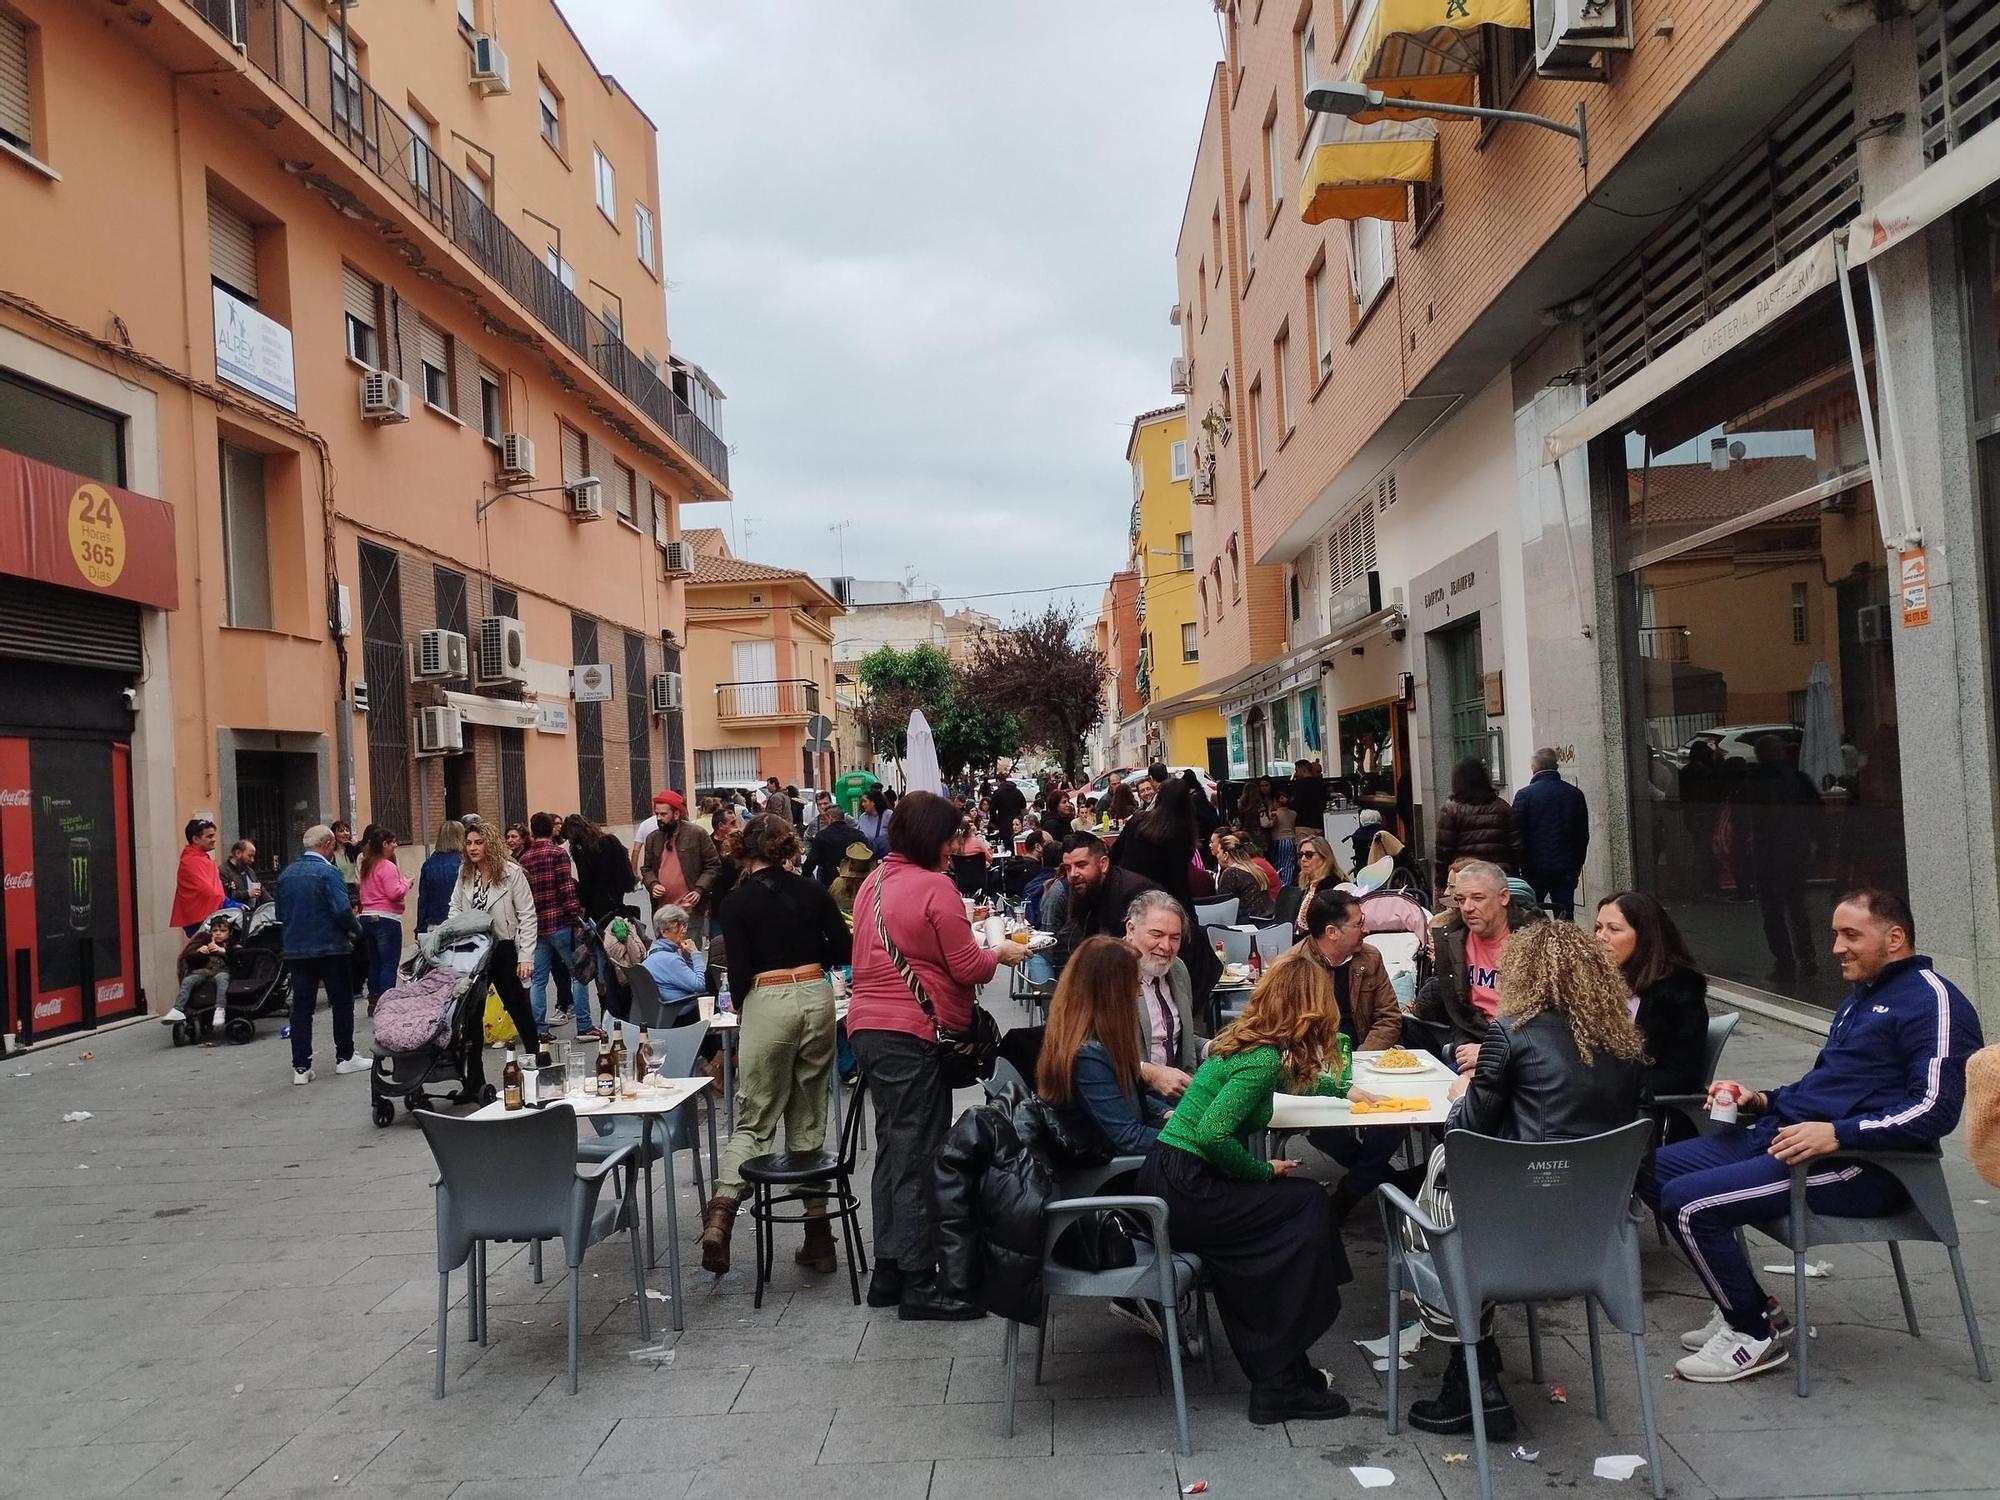 Galería | El Gran Desfile del Carnaval de Badajoz, en imágenes